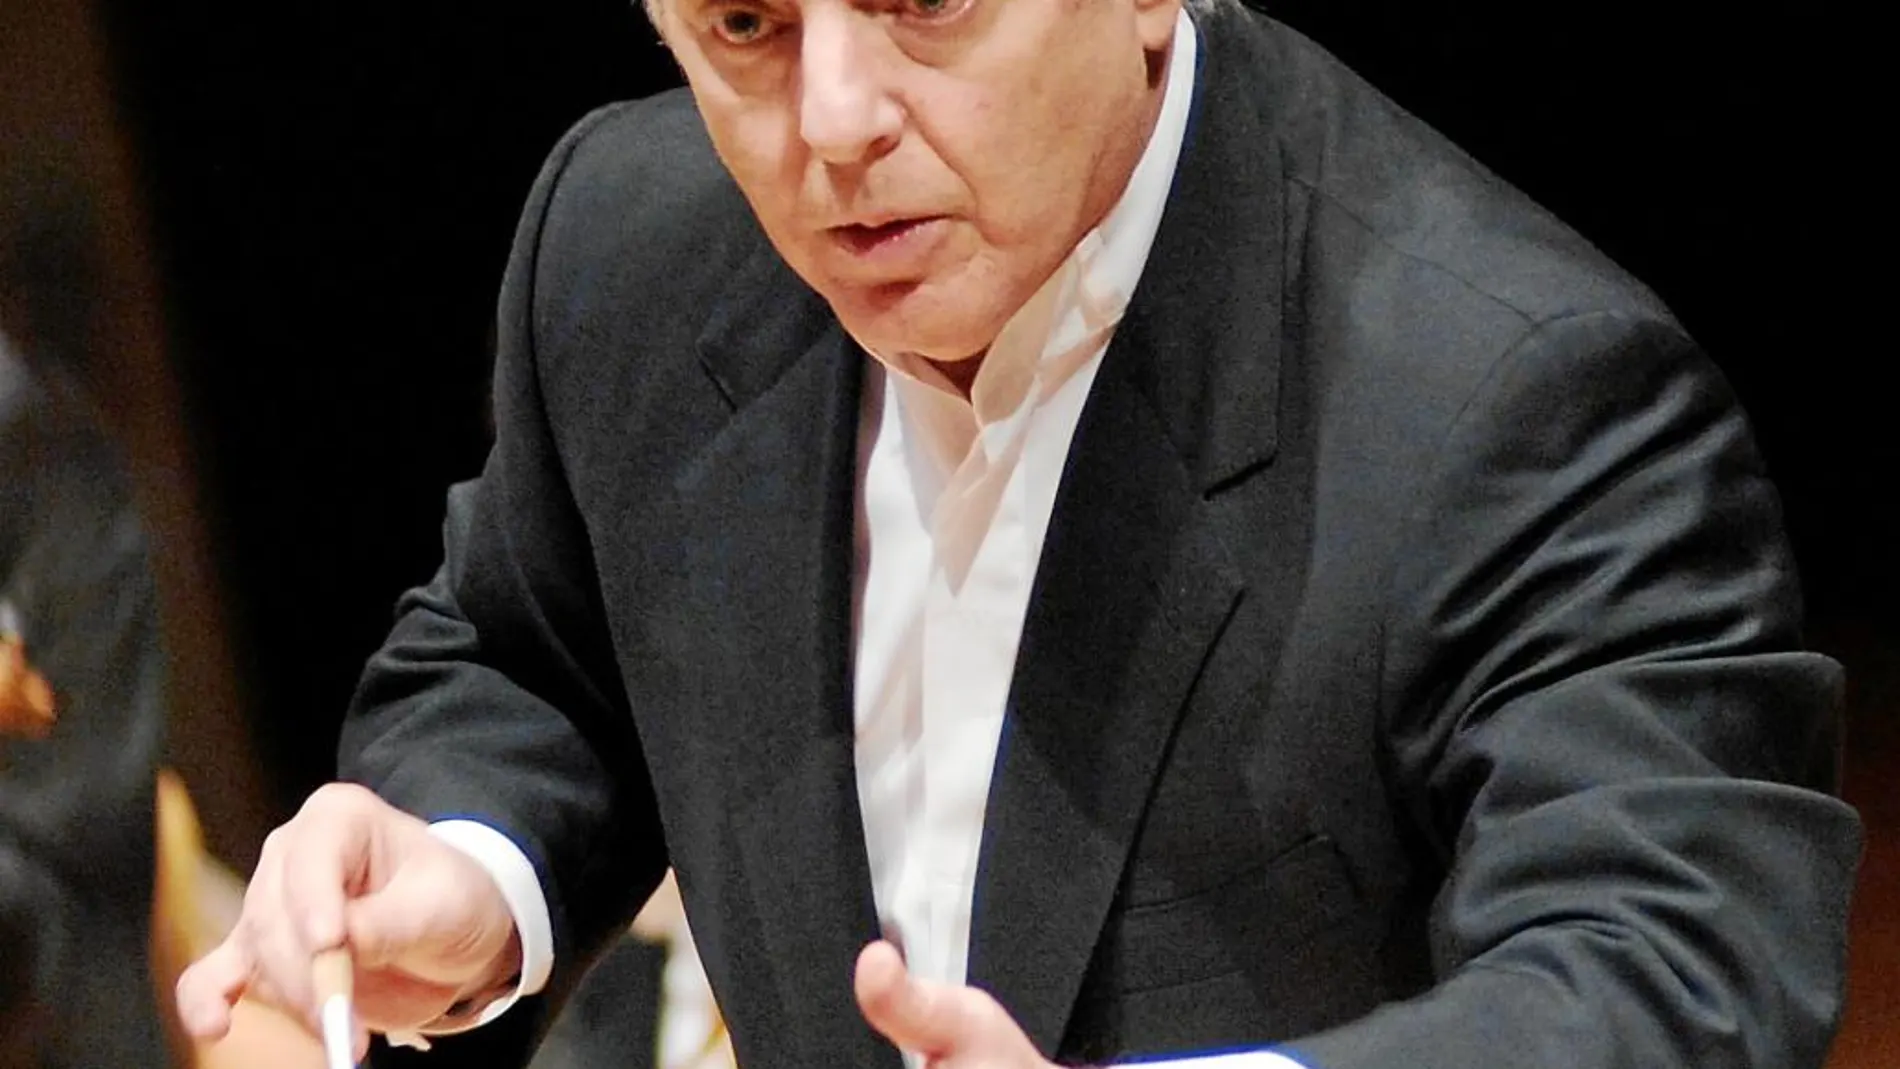 Daniel Barenboim dirige a la Staatskapelle de Berlín en dos conciertos que cierran hoy con un programa verdiano y la participación del Orfeó